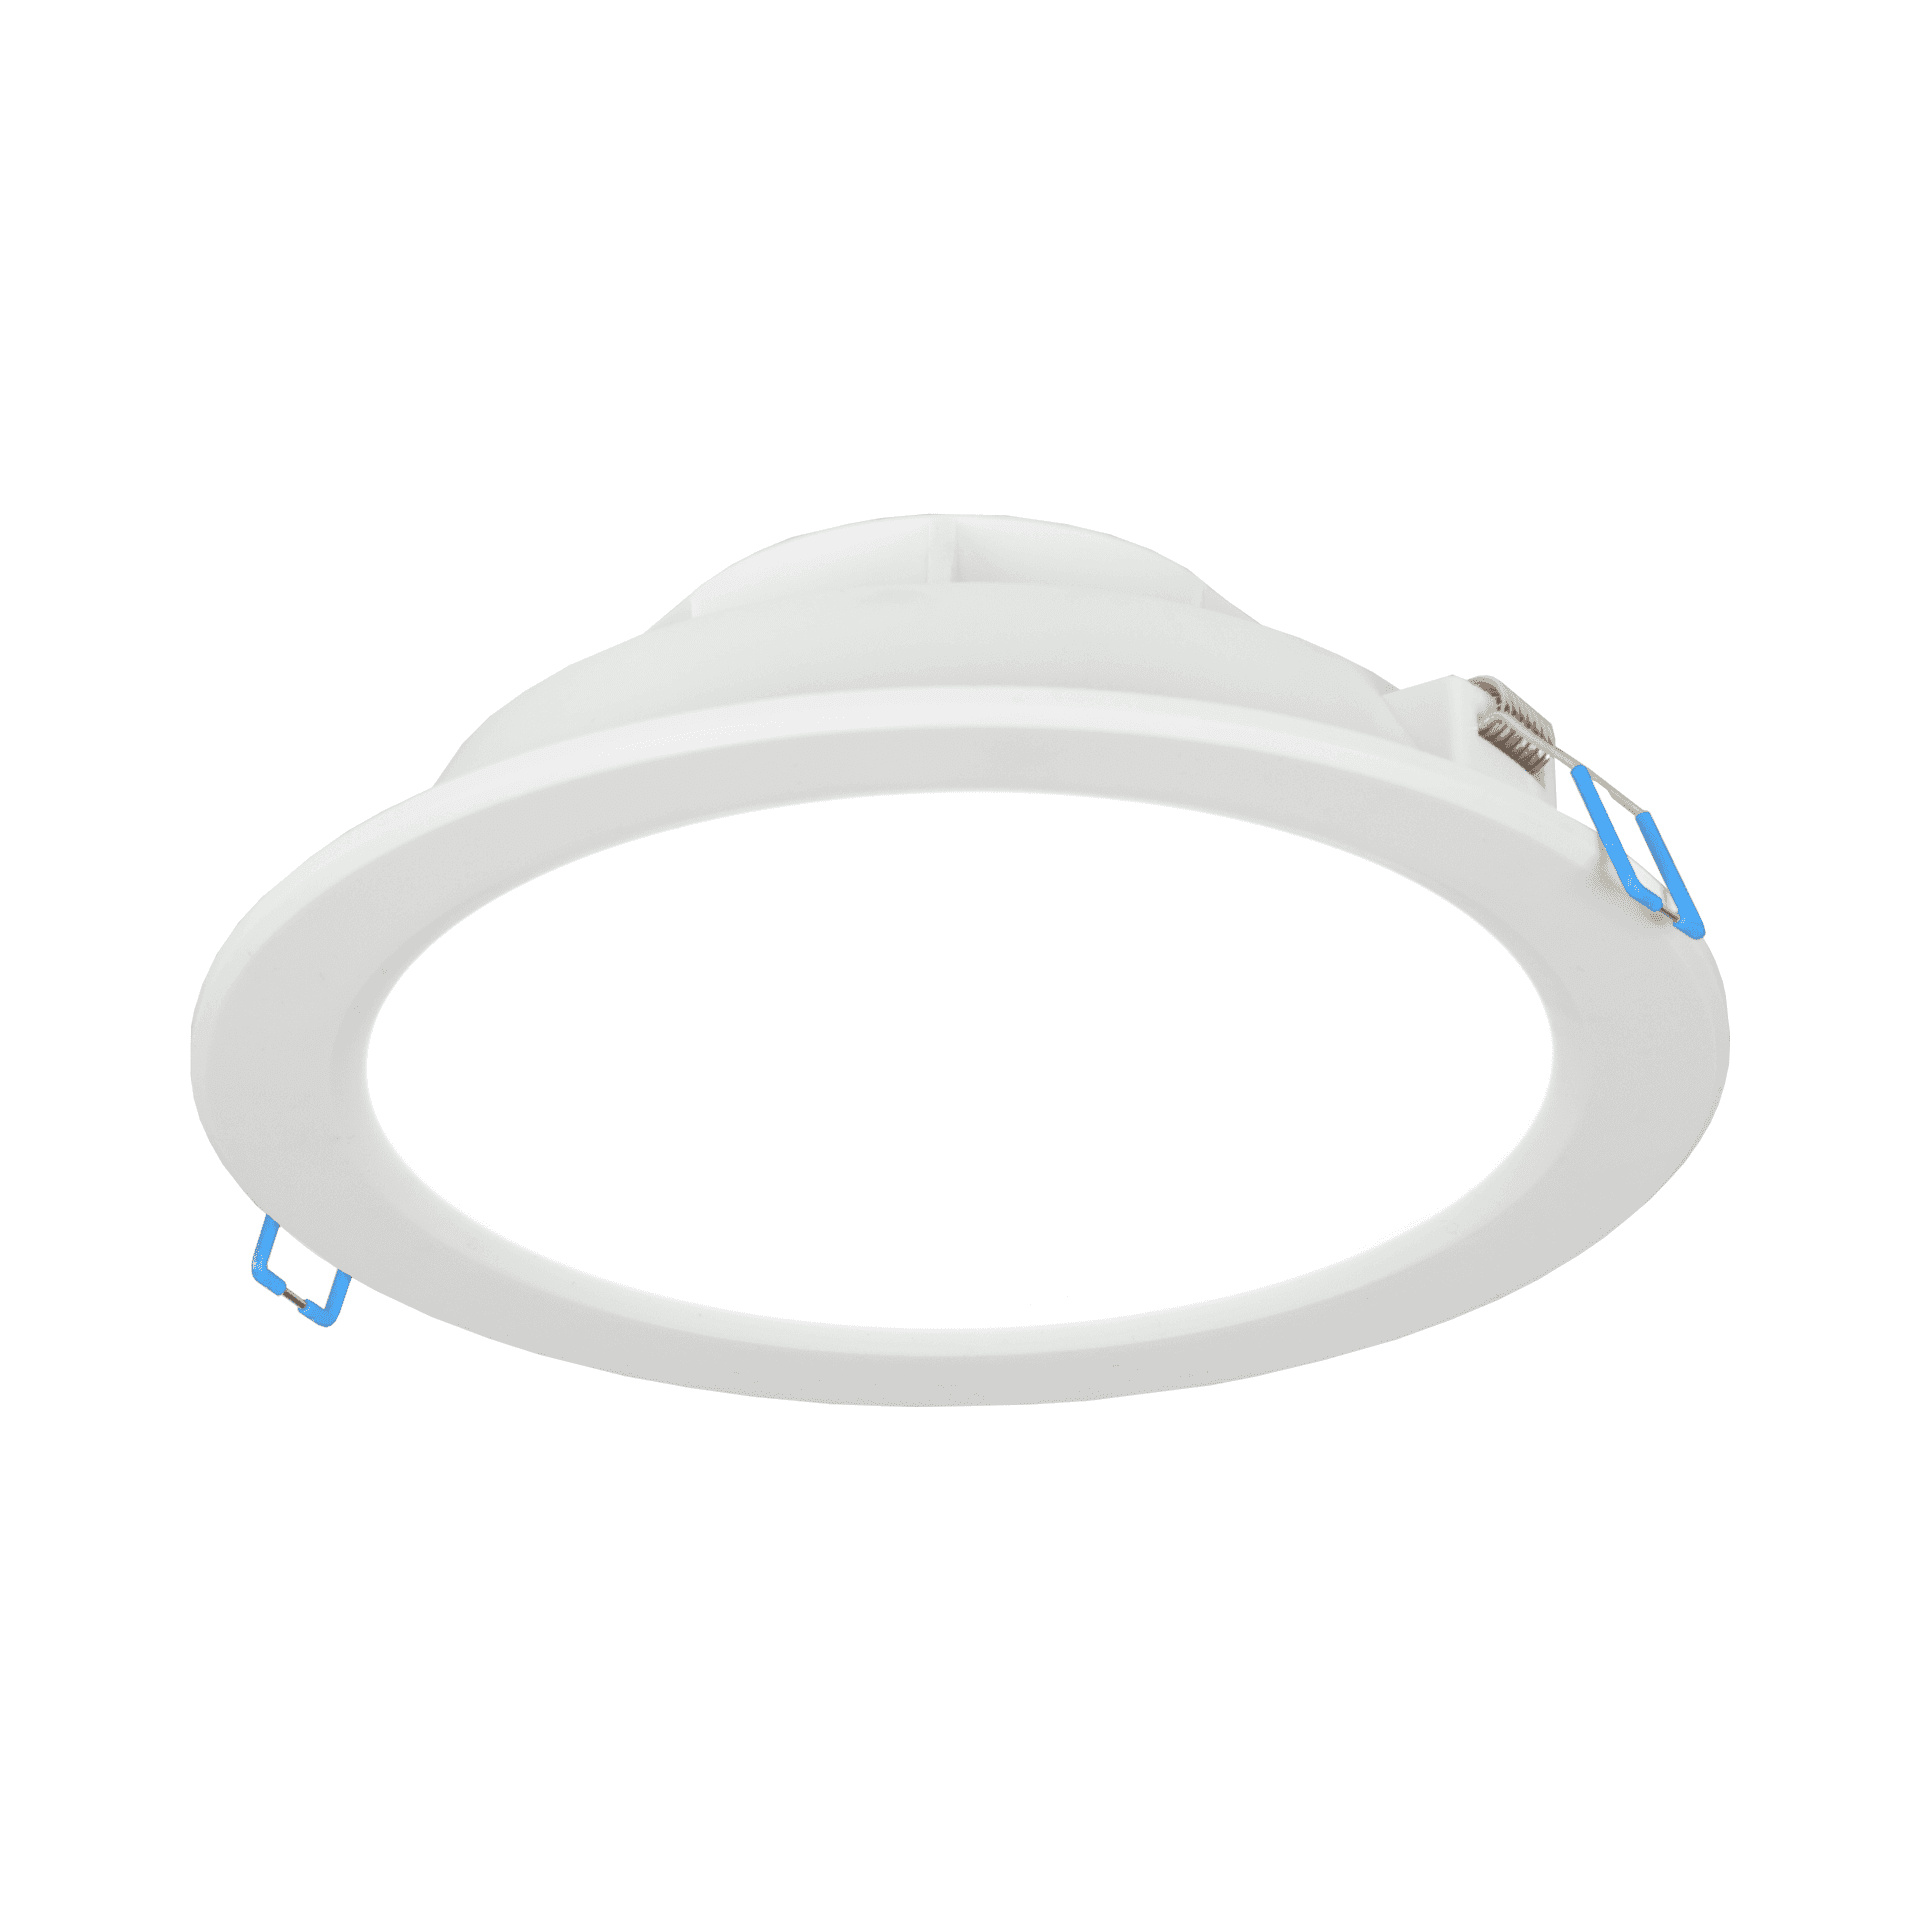 SKU 7654 - VT-7522 - Lampada LED da Tavolo 2W Colore Corten in Alluminio  con caricatore Wireless e Touch Dimmerabile 3000K IP54